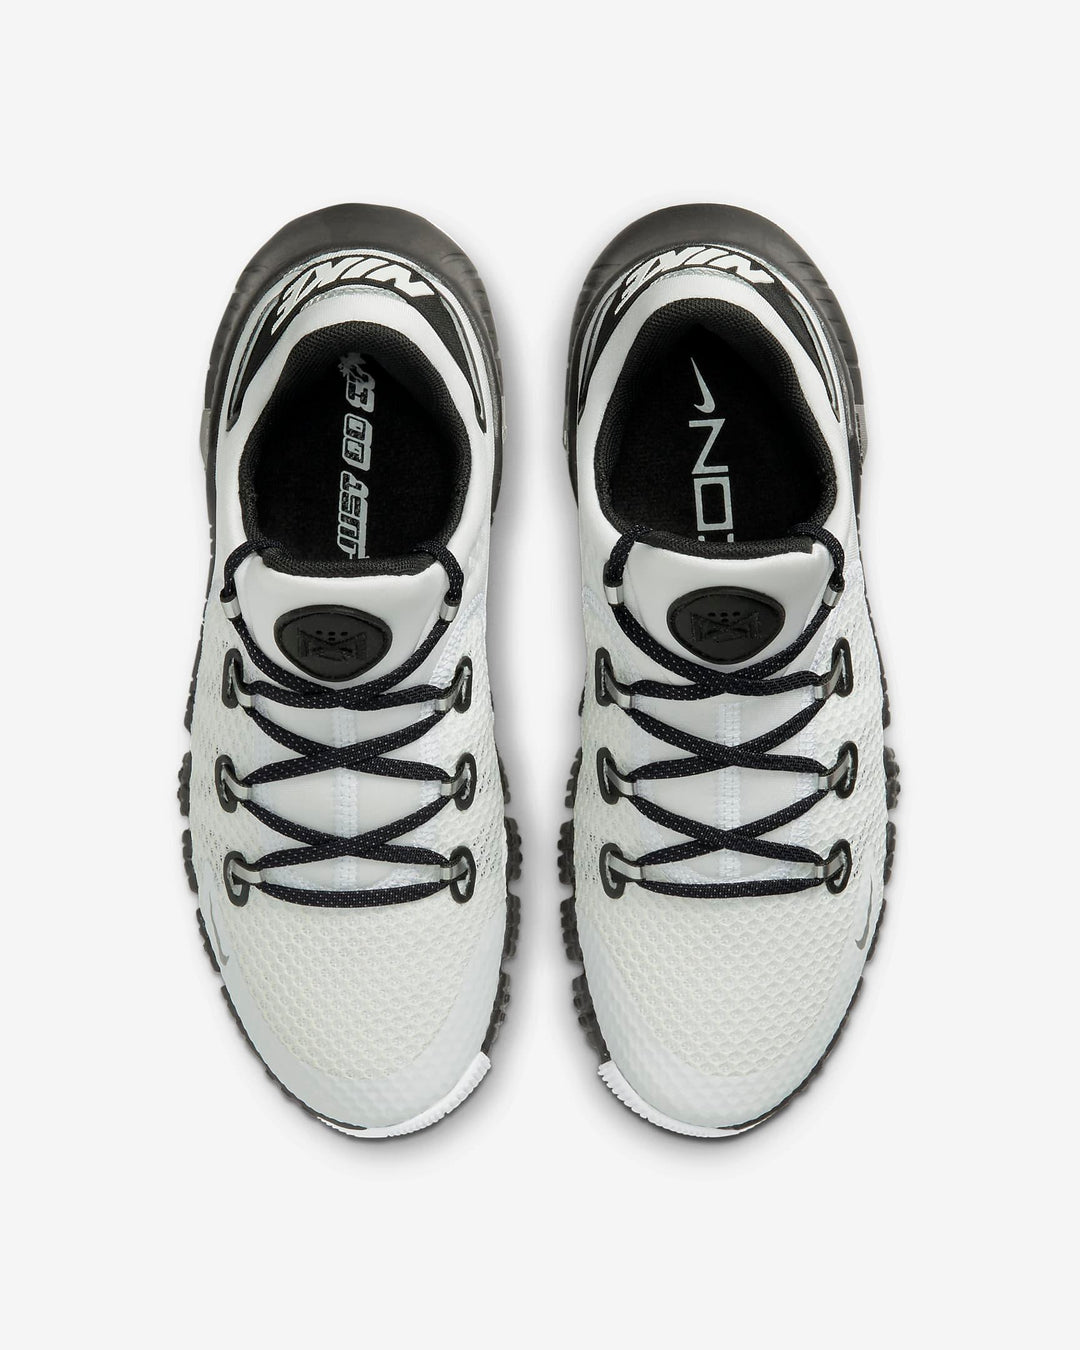 Giày Nike Free MetCon 4 Premium Women Shoes #White Black - Kallos Vietnam